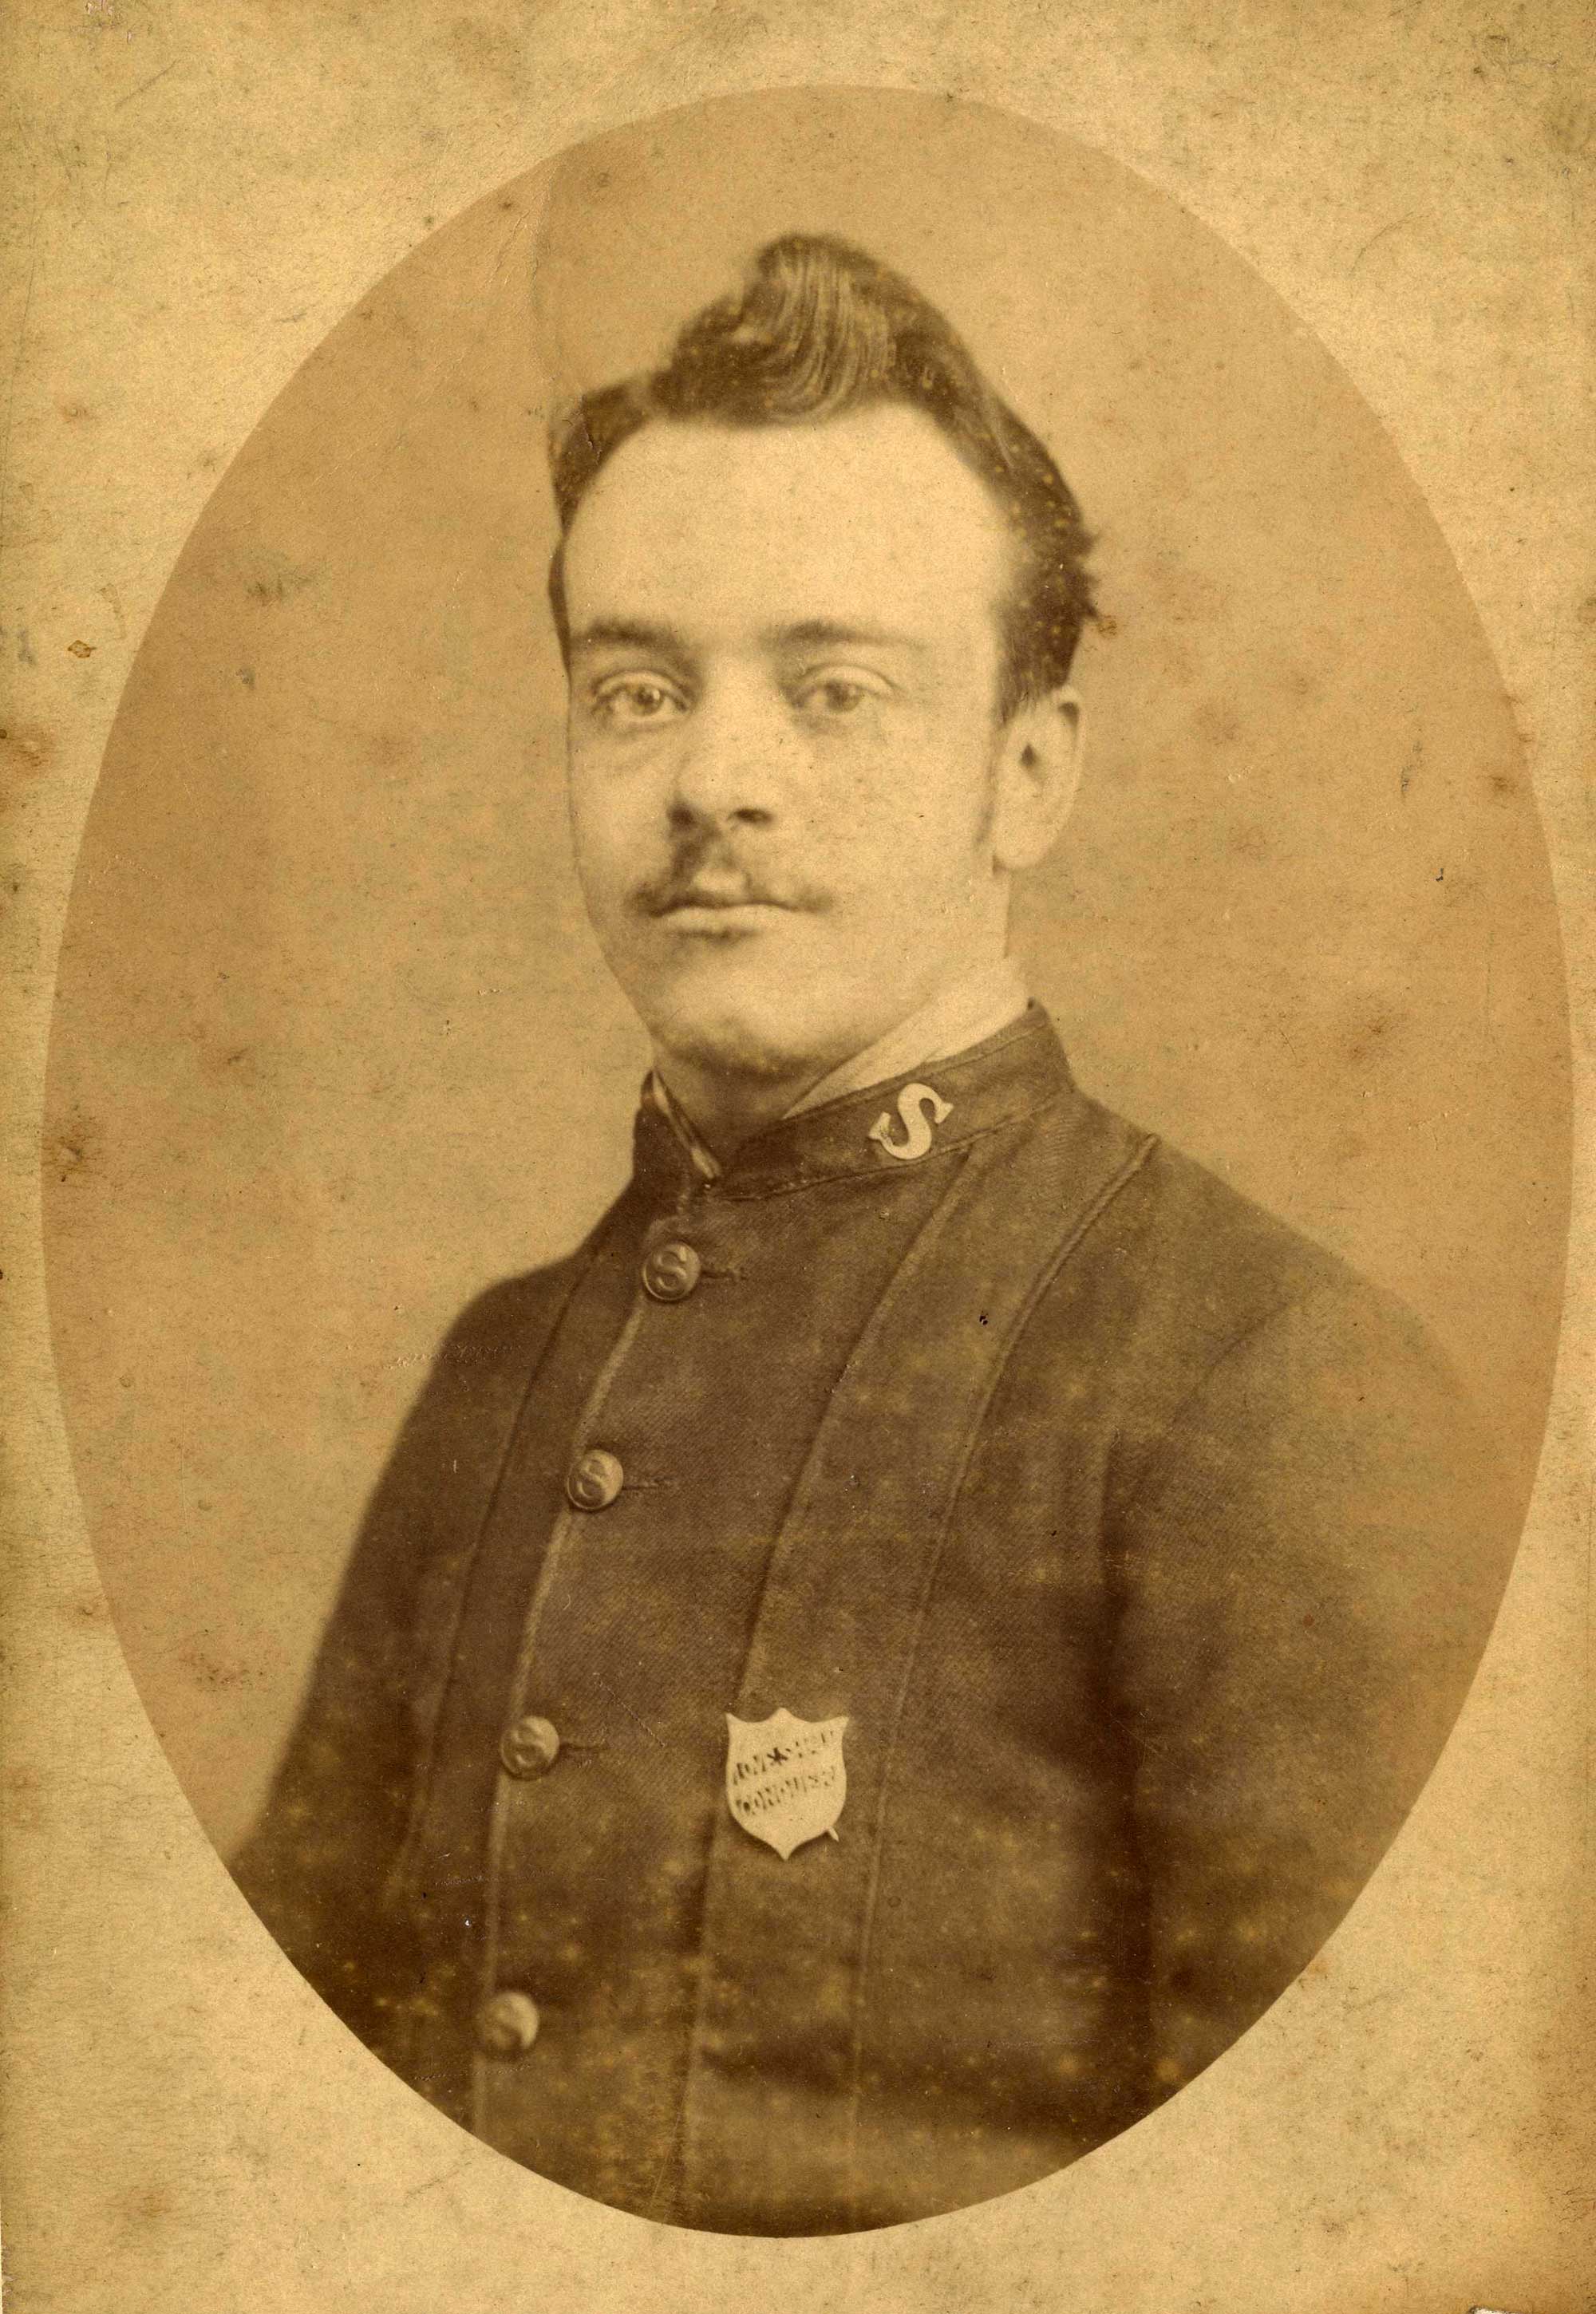 Edmund in uniform